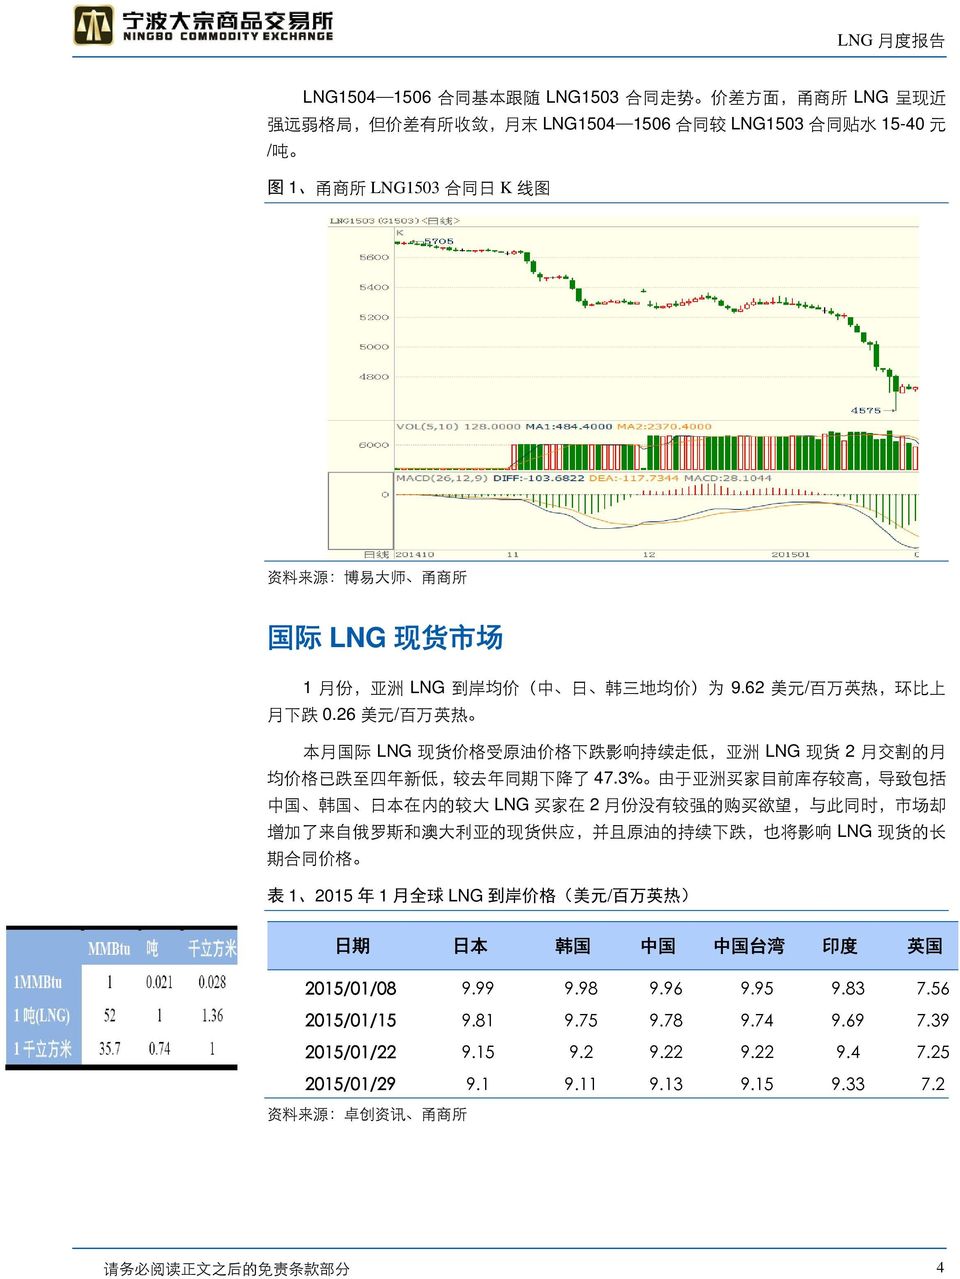 26 美 元 / 百 万 英 热 本 月 国 际 LNG 现 货 价 格 受 原 油 价 格 下 跌 影 响 持 续 走 低, 亚 洲 LNG 现 货 2 月 交 割 的 月 均 价 格 已 跌 至 四 年 新 低, 较 去 年 同 期 下 降 了 47.